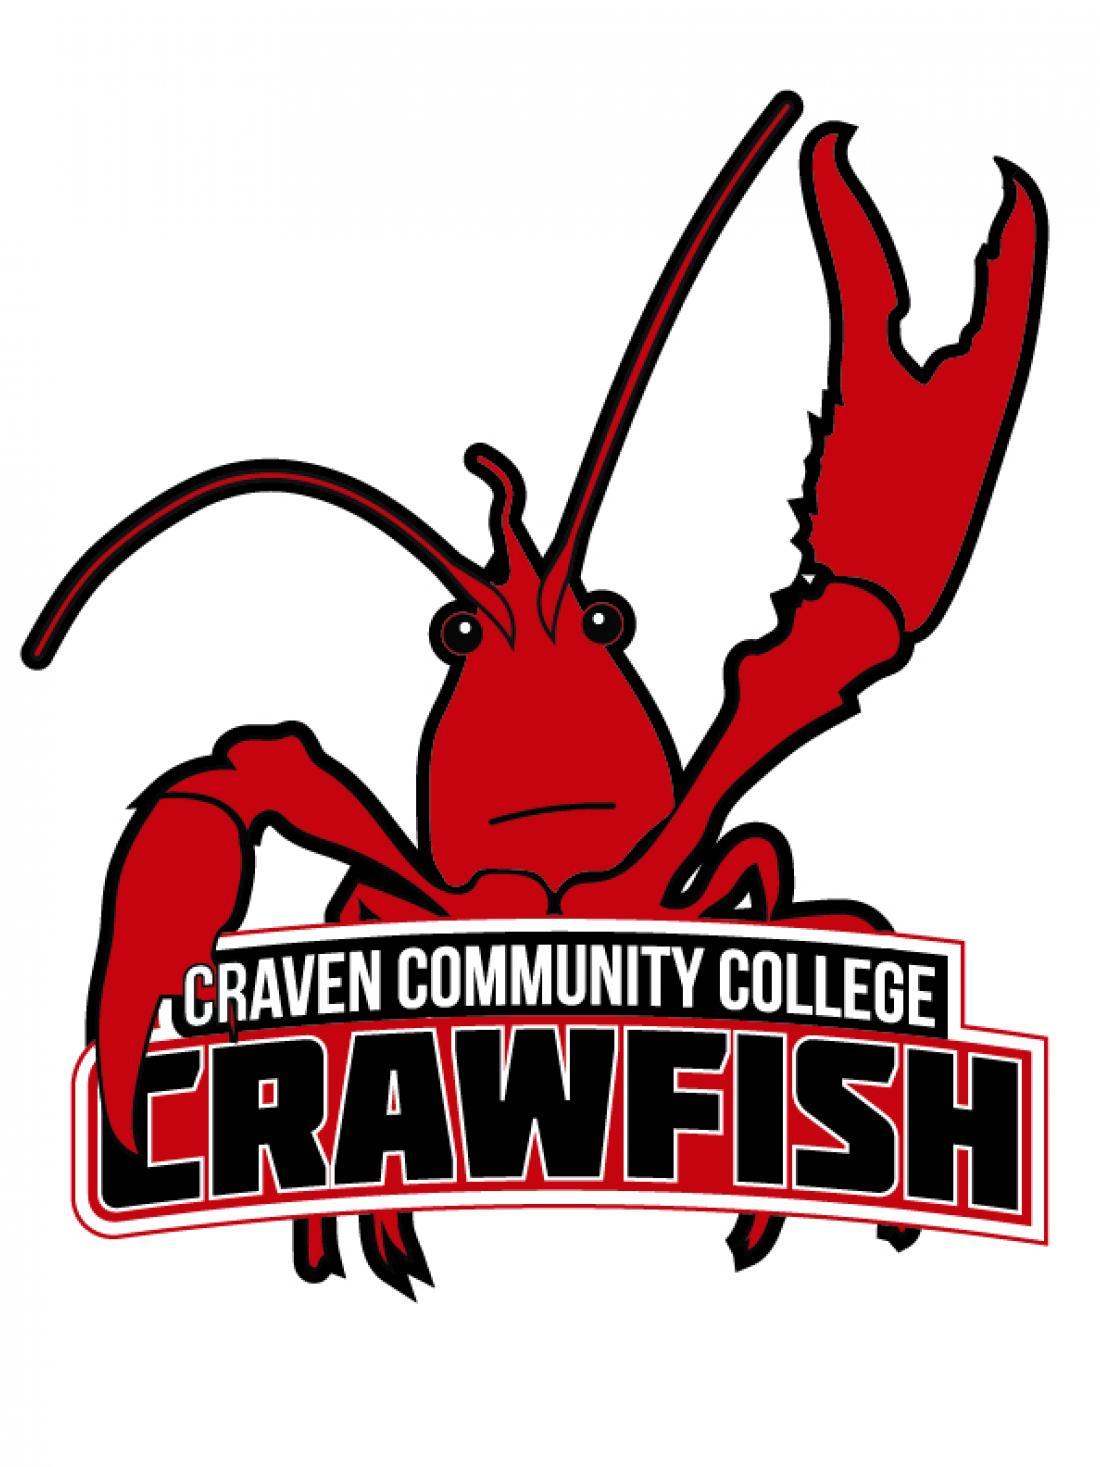 Craven Community College Trish the Crawfish spoof logo